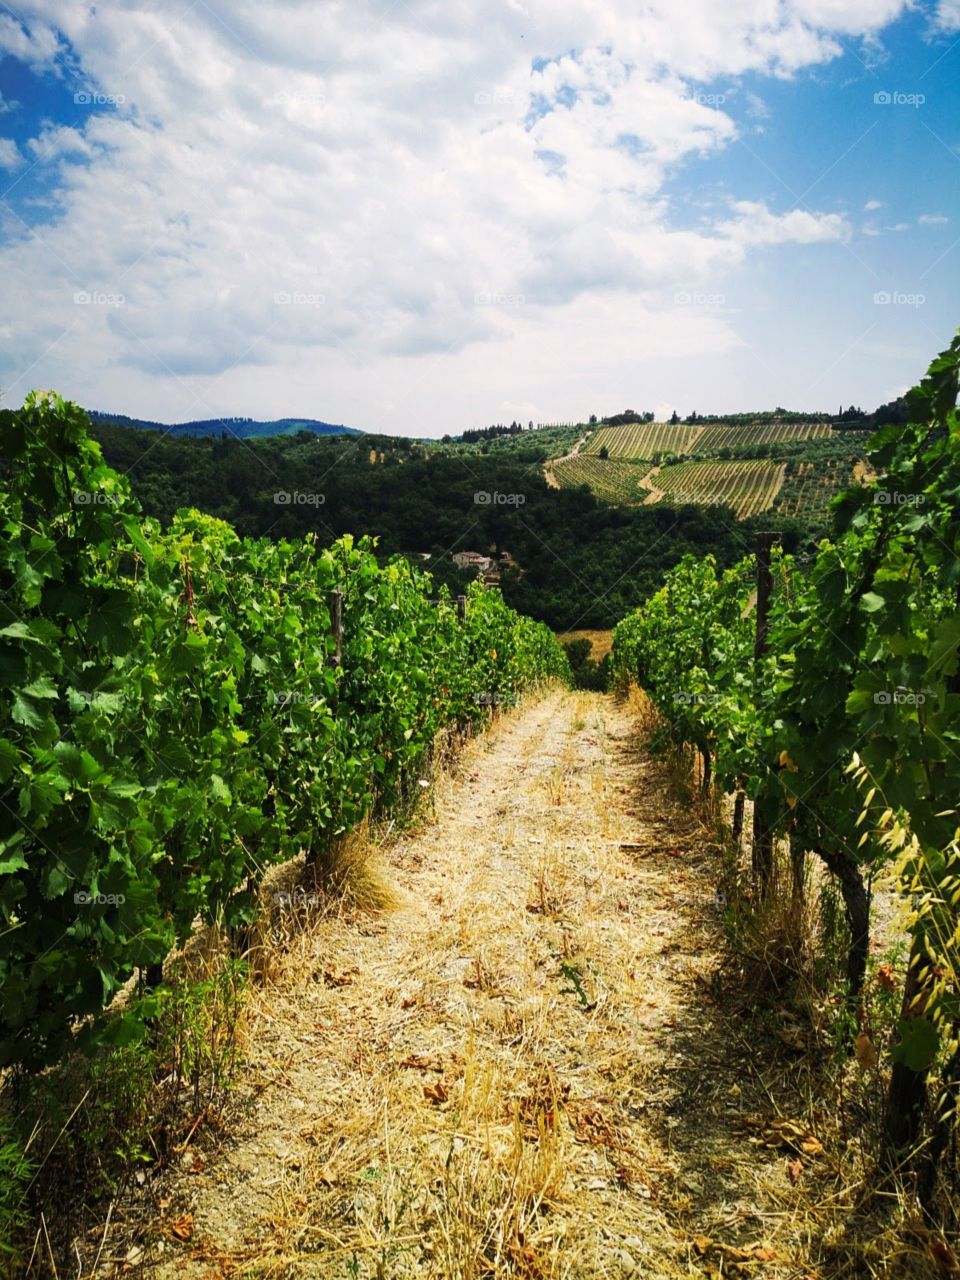 Tuscany Italy vineyards